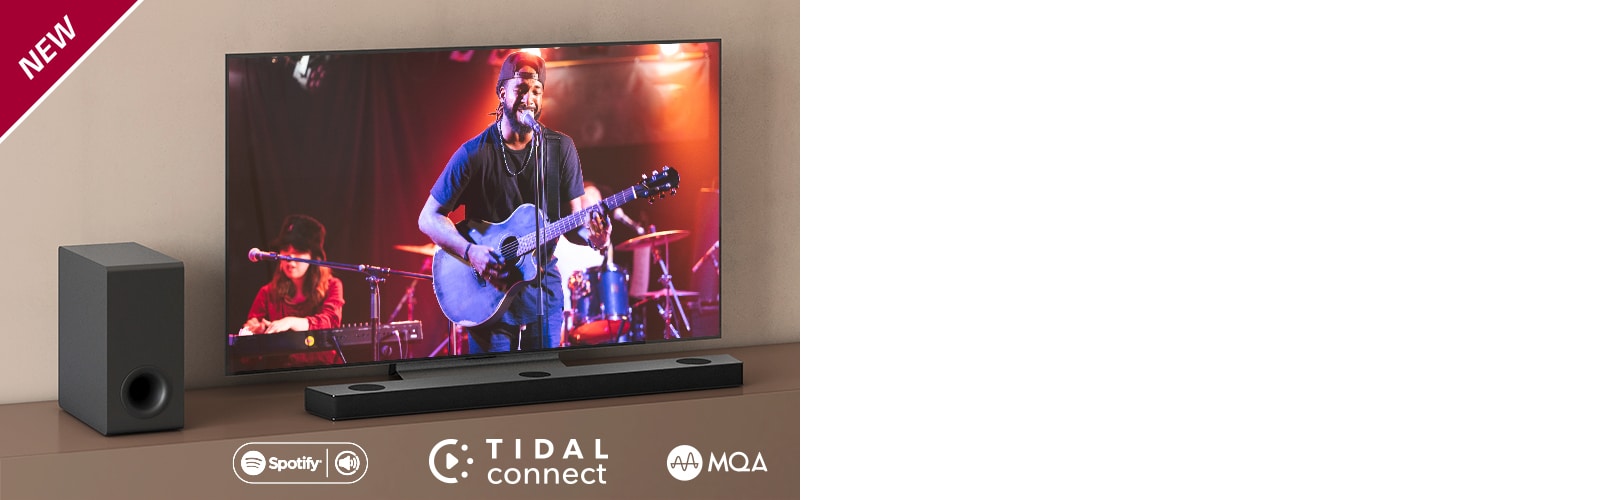 LG TV ir novietots uz brūna plaukta, LG Sound Bar S90QY ir novietota televizora priekšā. Zemo frekvenču pastiprinātājs ir novietots televizora kreisajā pusē. TV ekrānā redzama koncerta aina. Atzīme “Jaunums” ir redzama augšējā kreisajā stūrī.